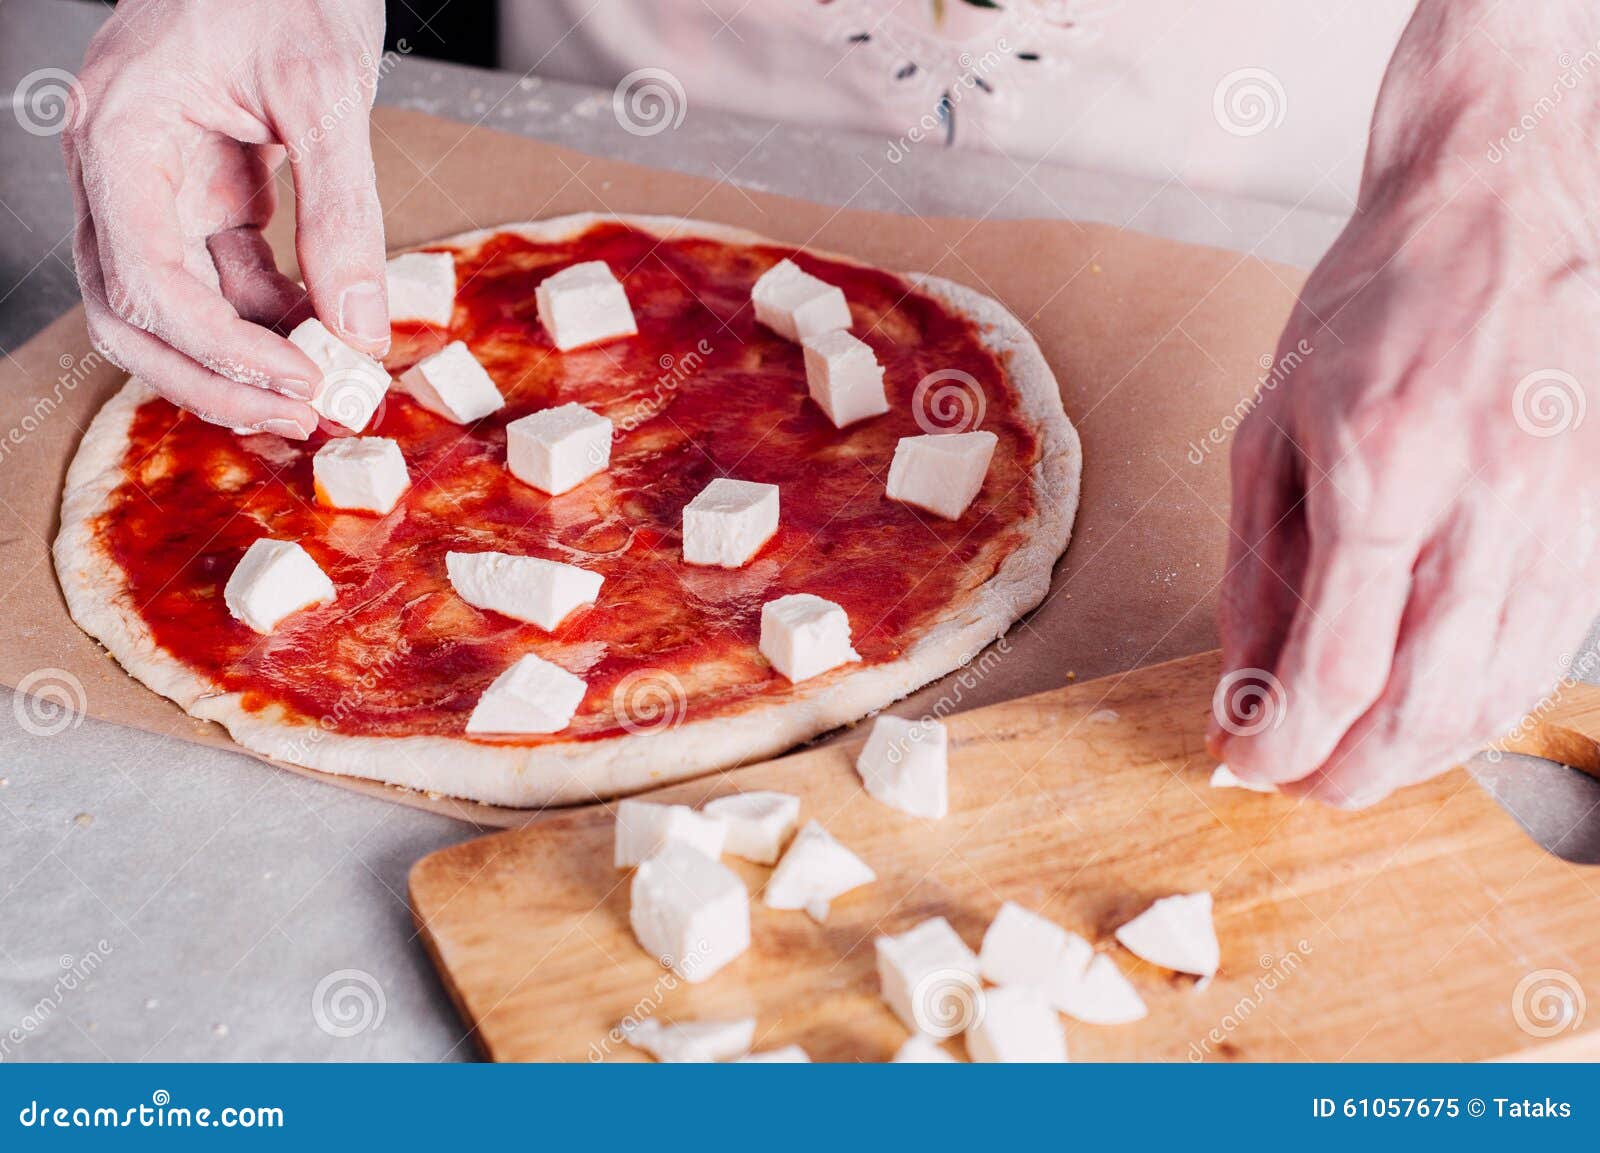 как кладут ингридиенты в пиццу фото 76